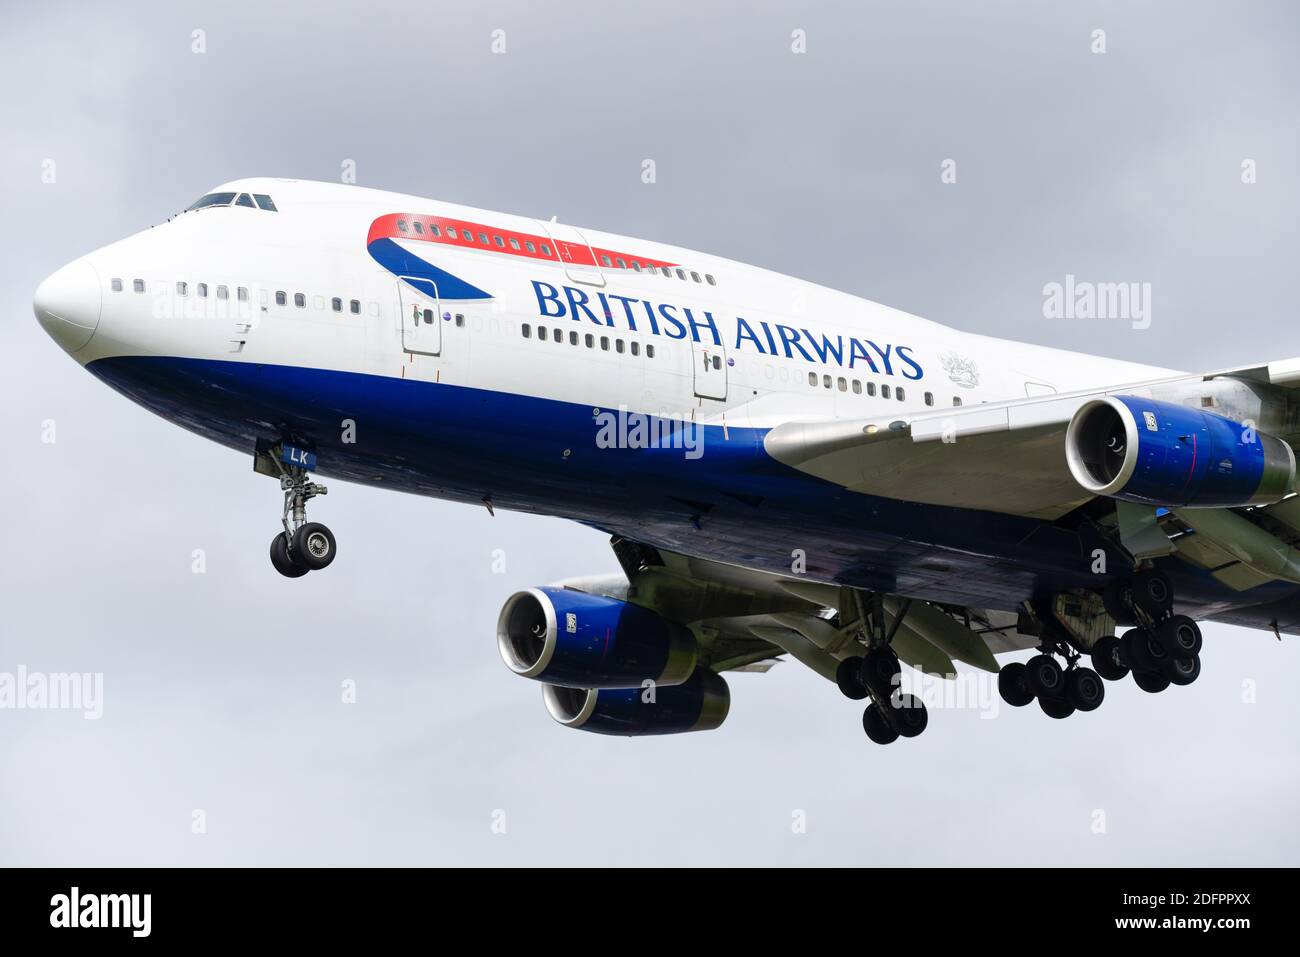 British Airways Boeing 747 Jumbo Jet-Flugzeug G-BNLK auf dem Anflug auf den Flughafen London Heathrow, Großbritannien Stockfoto